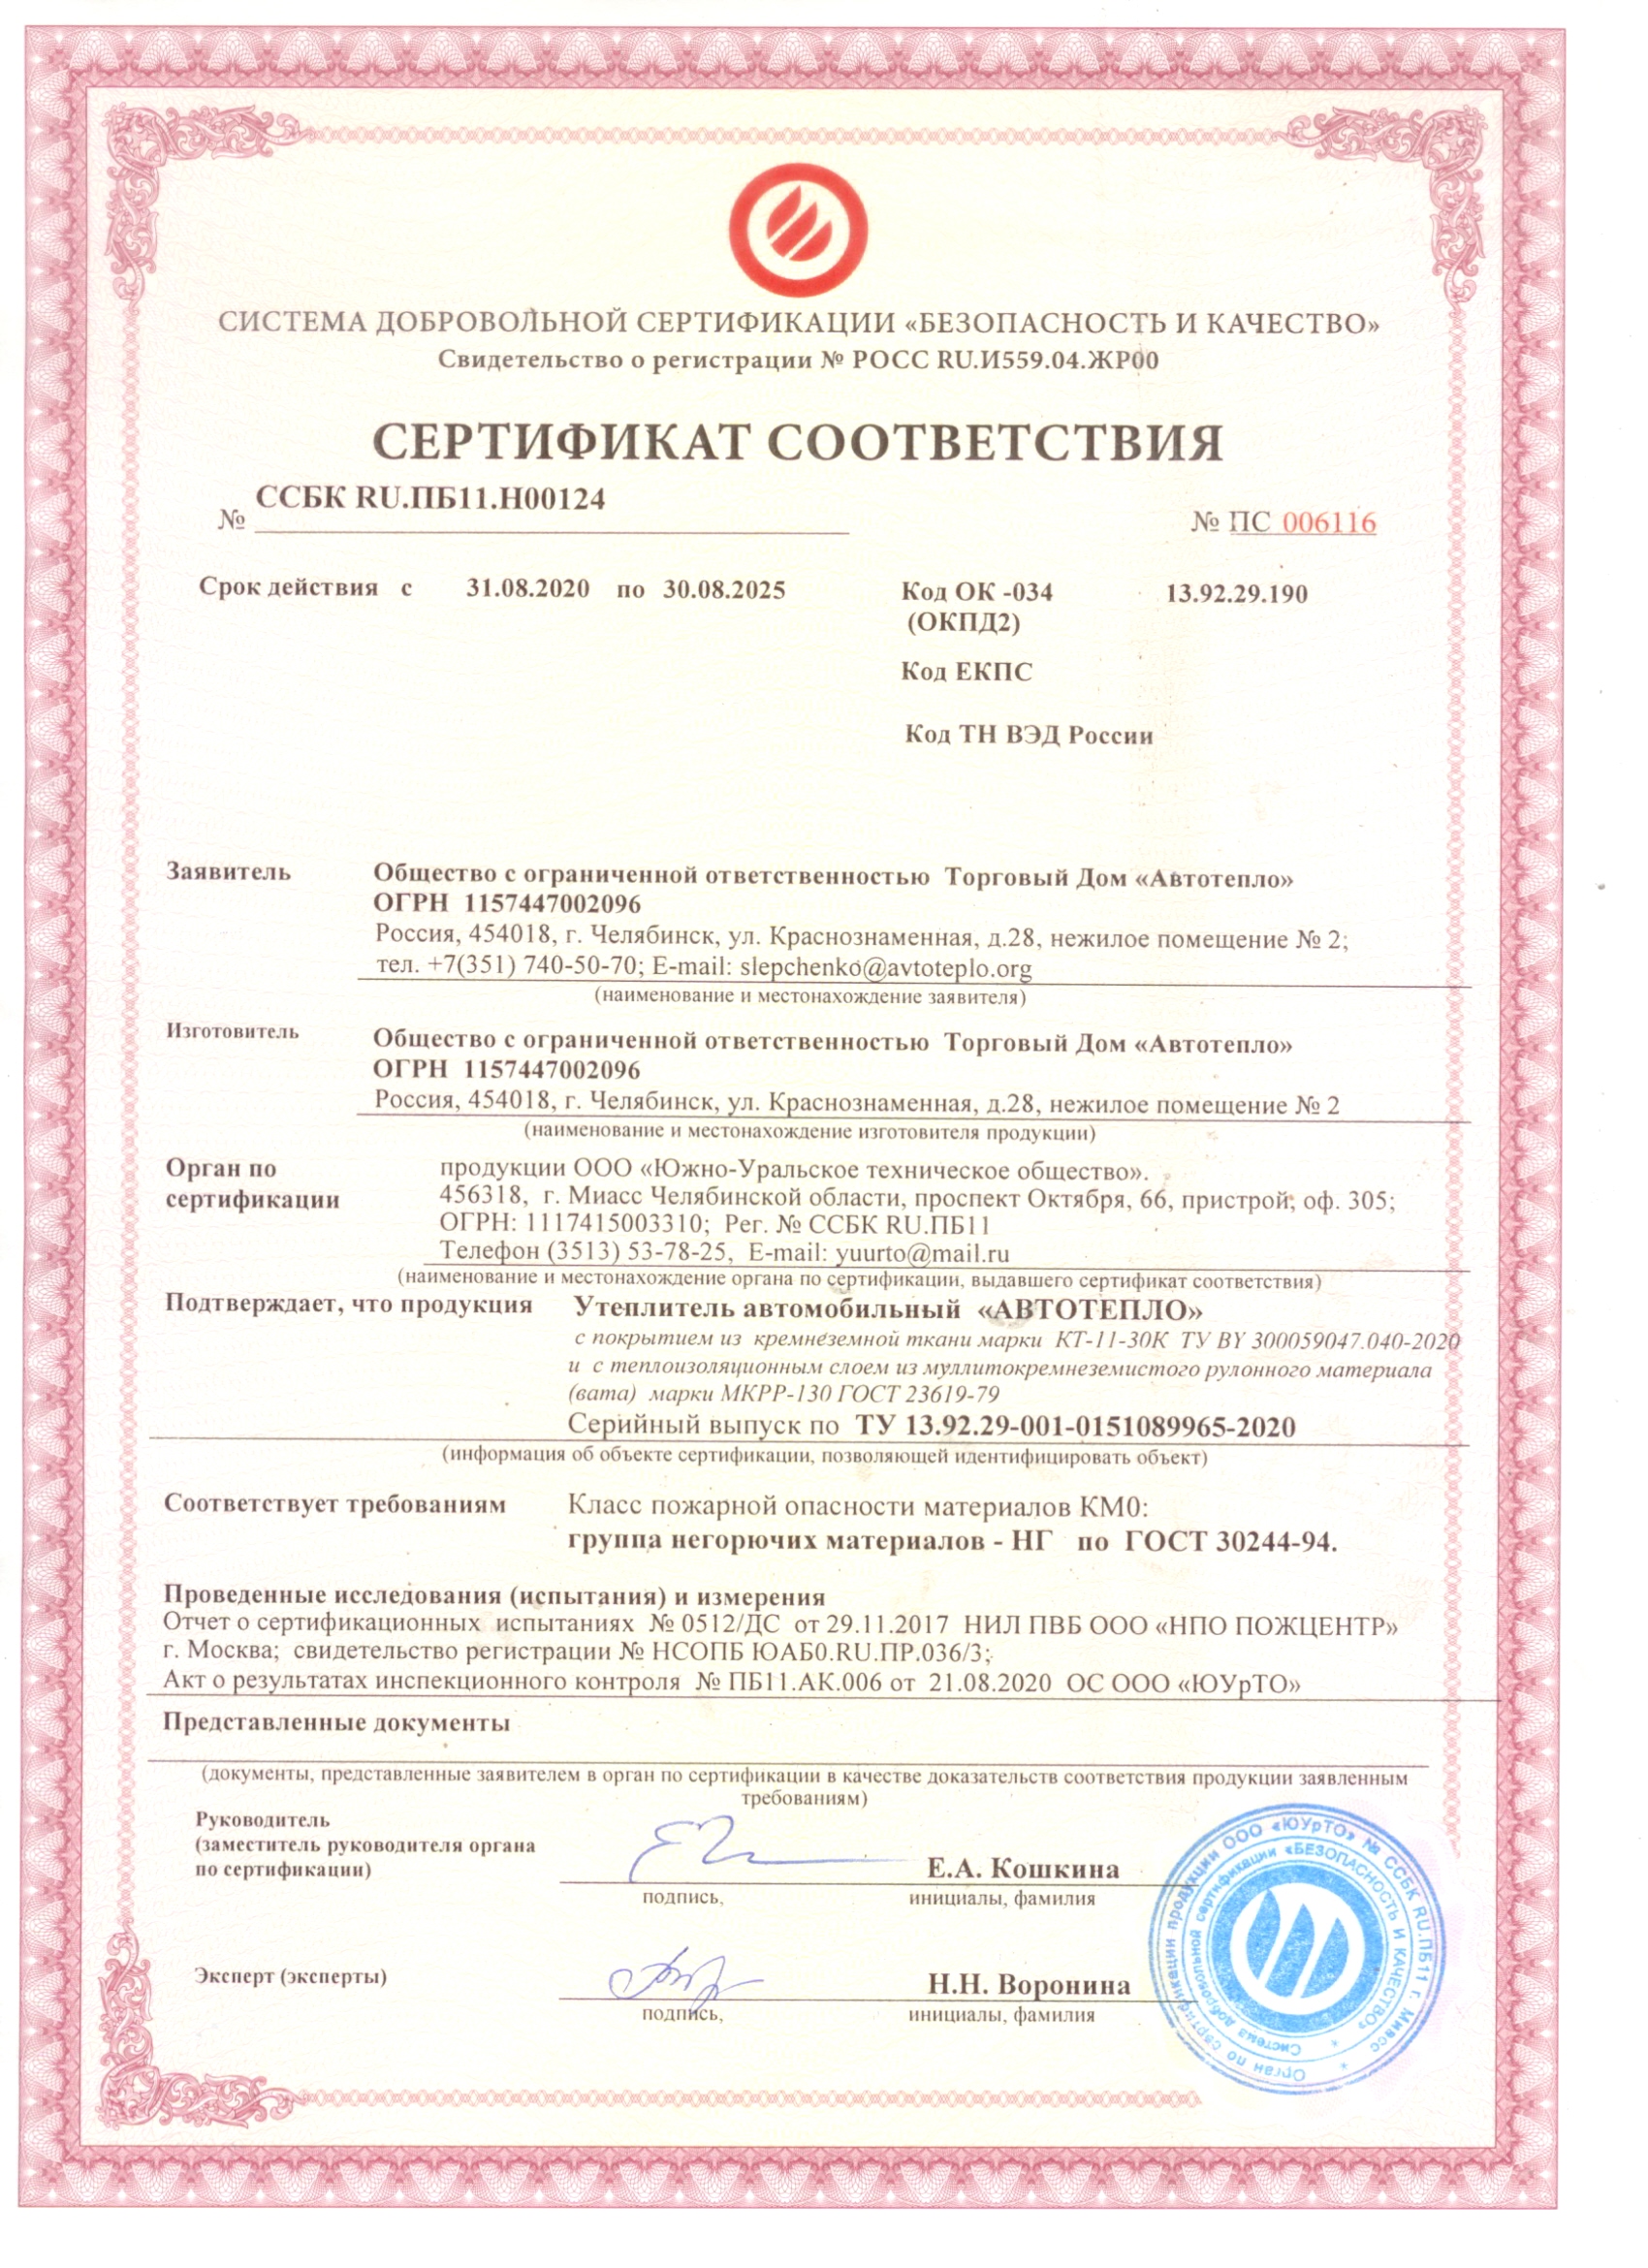 сертификат соответствия на короб дкс